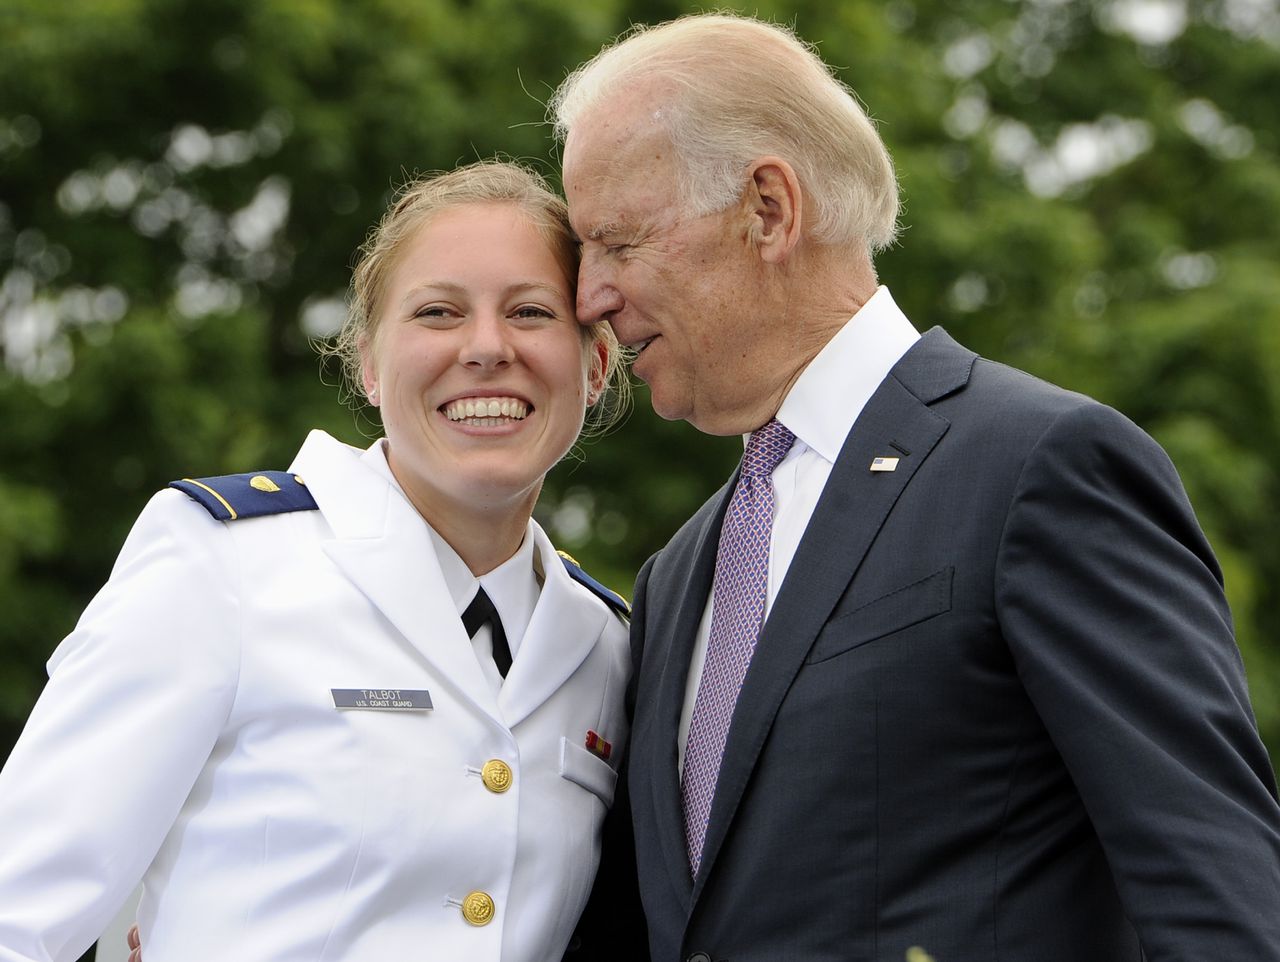 Joe Biden over ongepast gedrag: sociale normen veranderen 